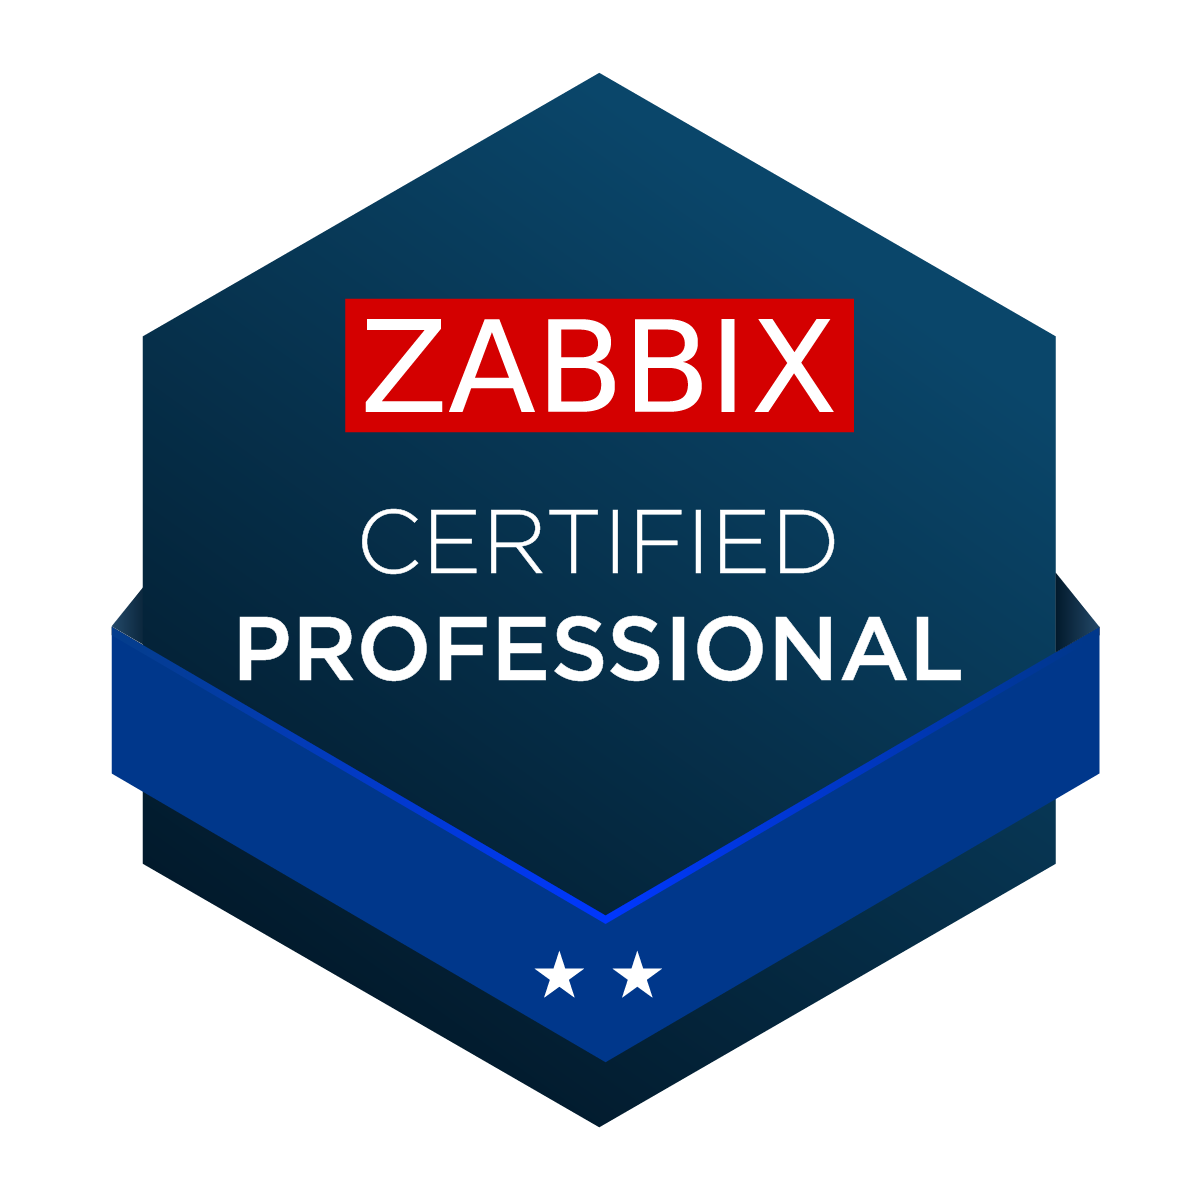 Zabbix Certified Professional